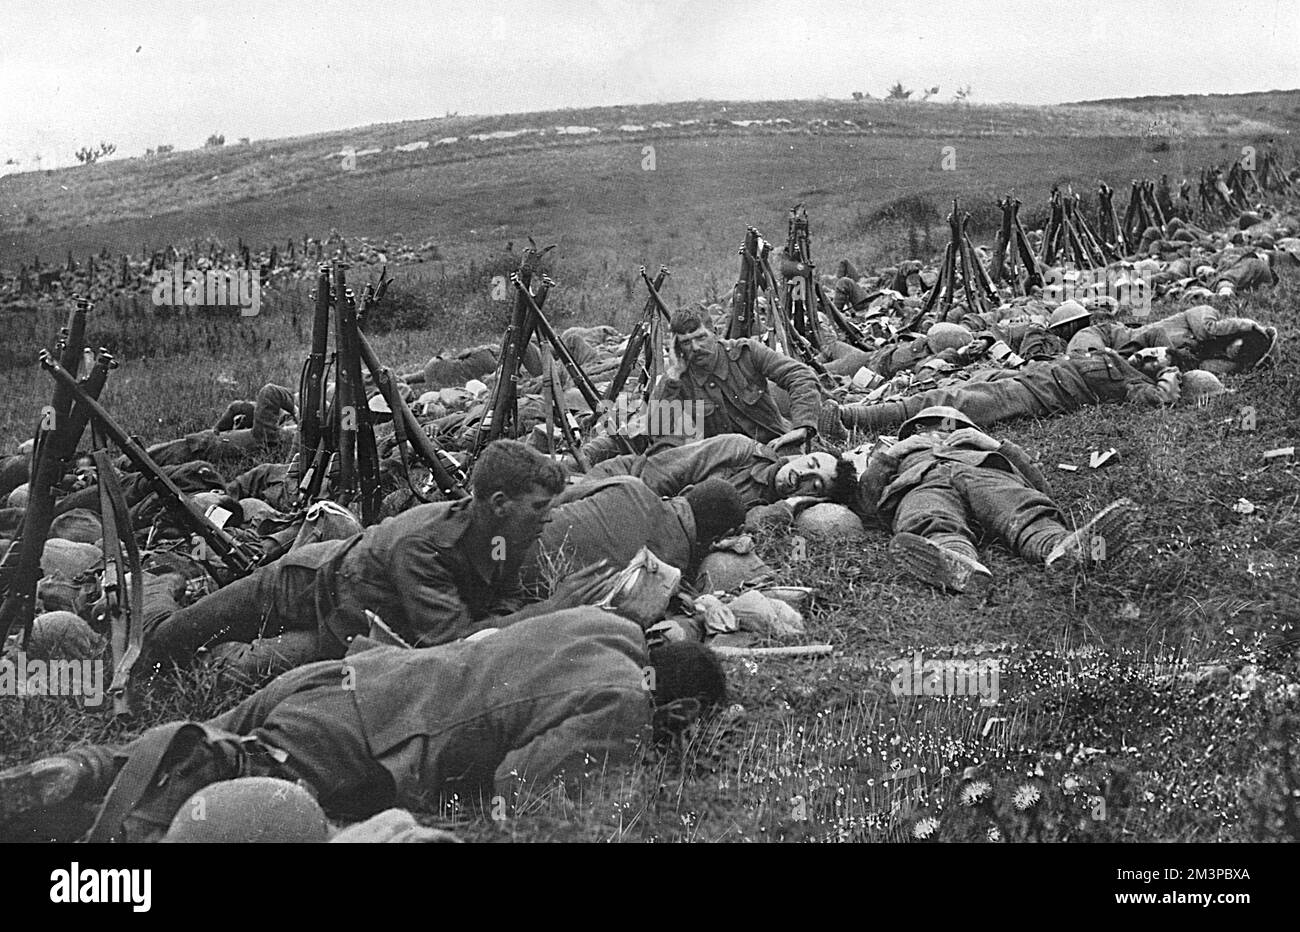 Die britische Offensive im französischen Somme-Bezirk - Männer des Warwickshire Regiments bivouierten vor einem Angriff im Juli 1916. Datum: 1916 Stockfoto